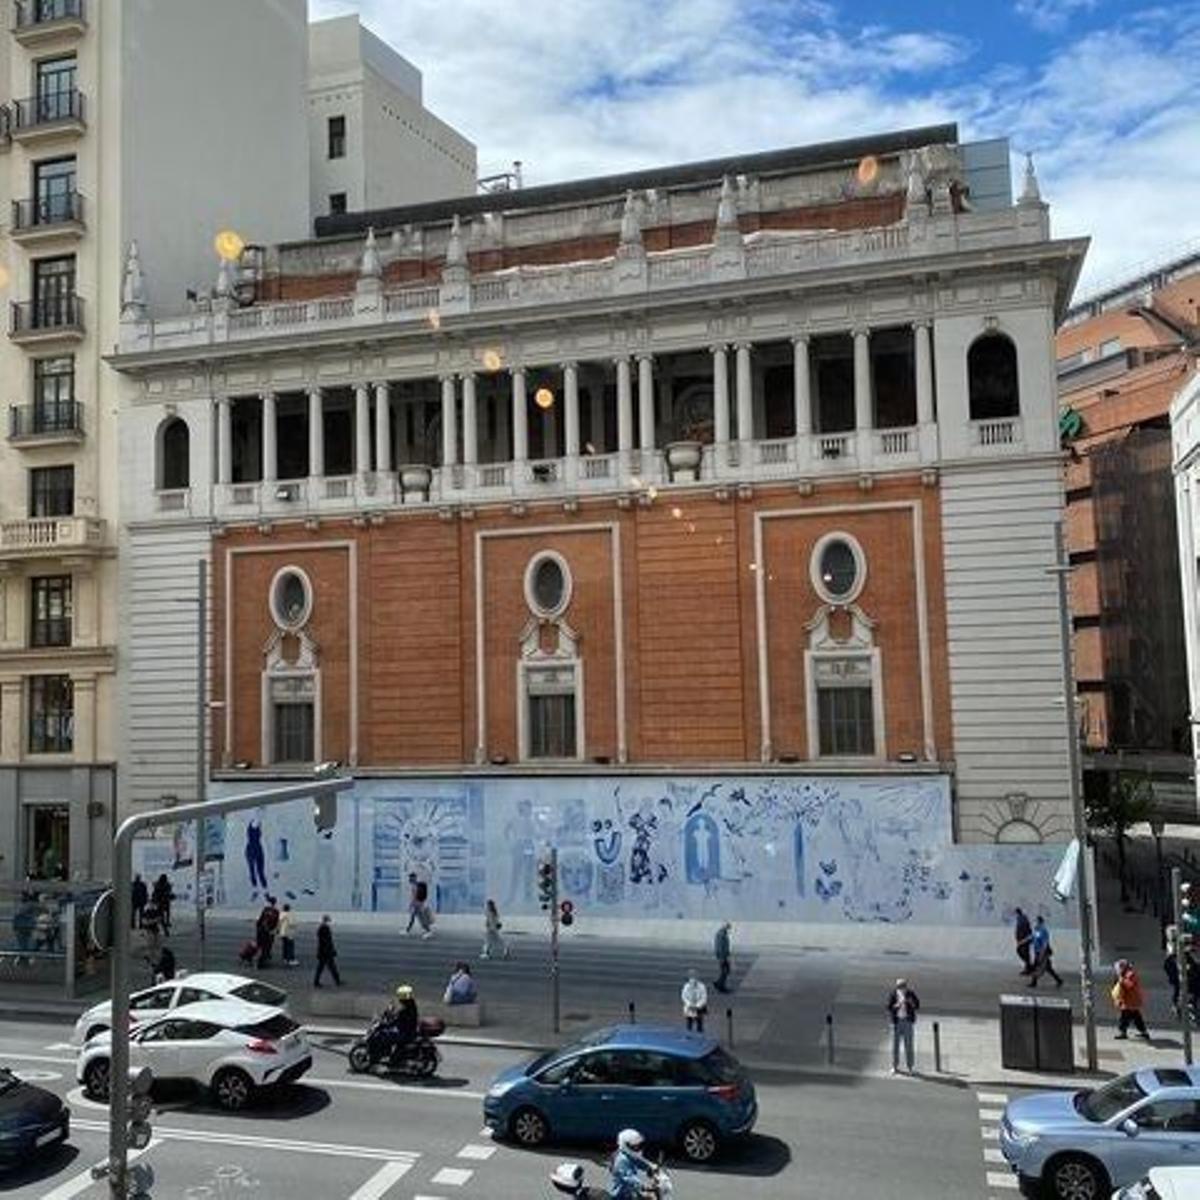 Nuevo mural en Gran Vía (Madrid)